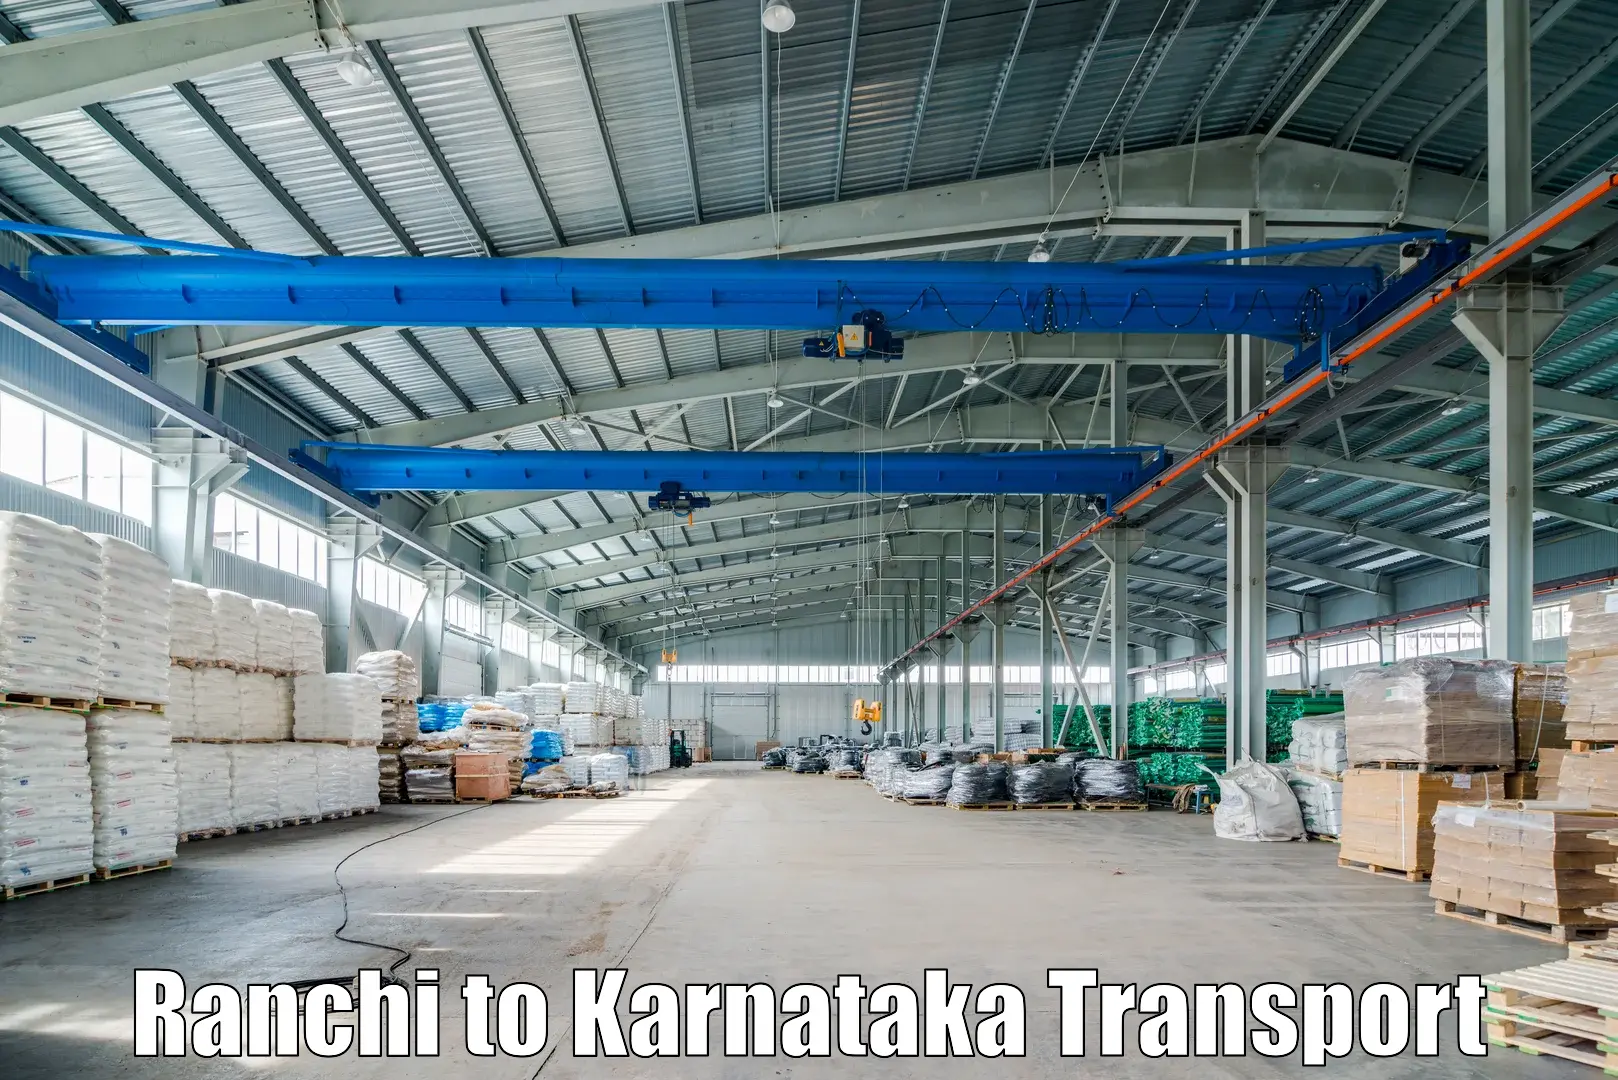 Shipping partner in Ranchi to Kalaburagi